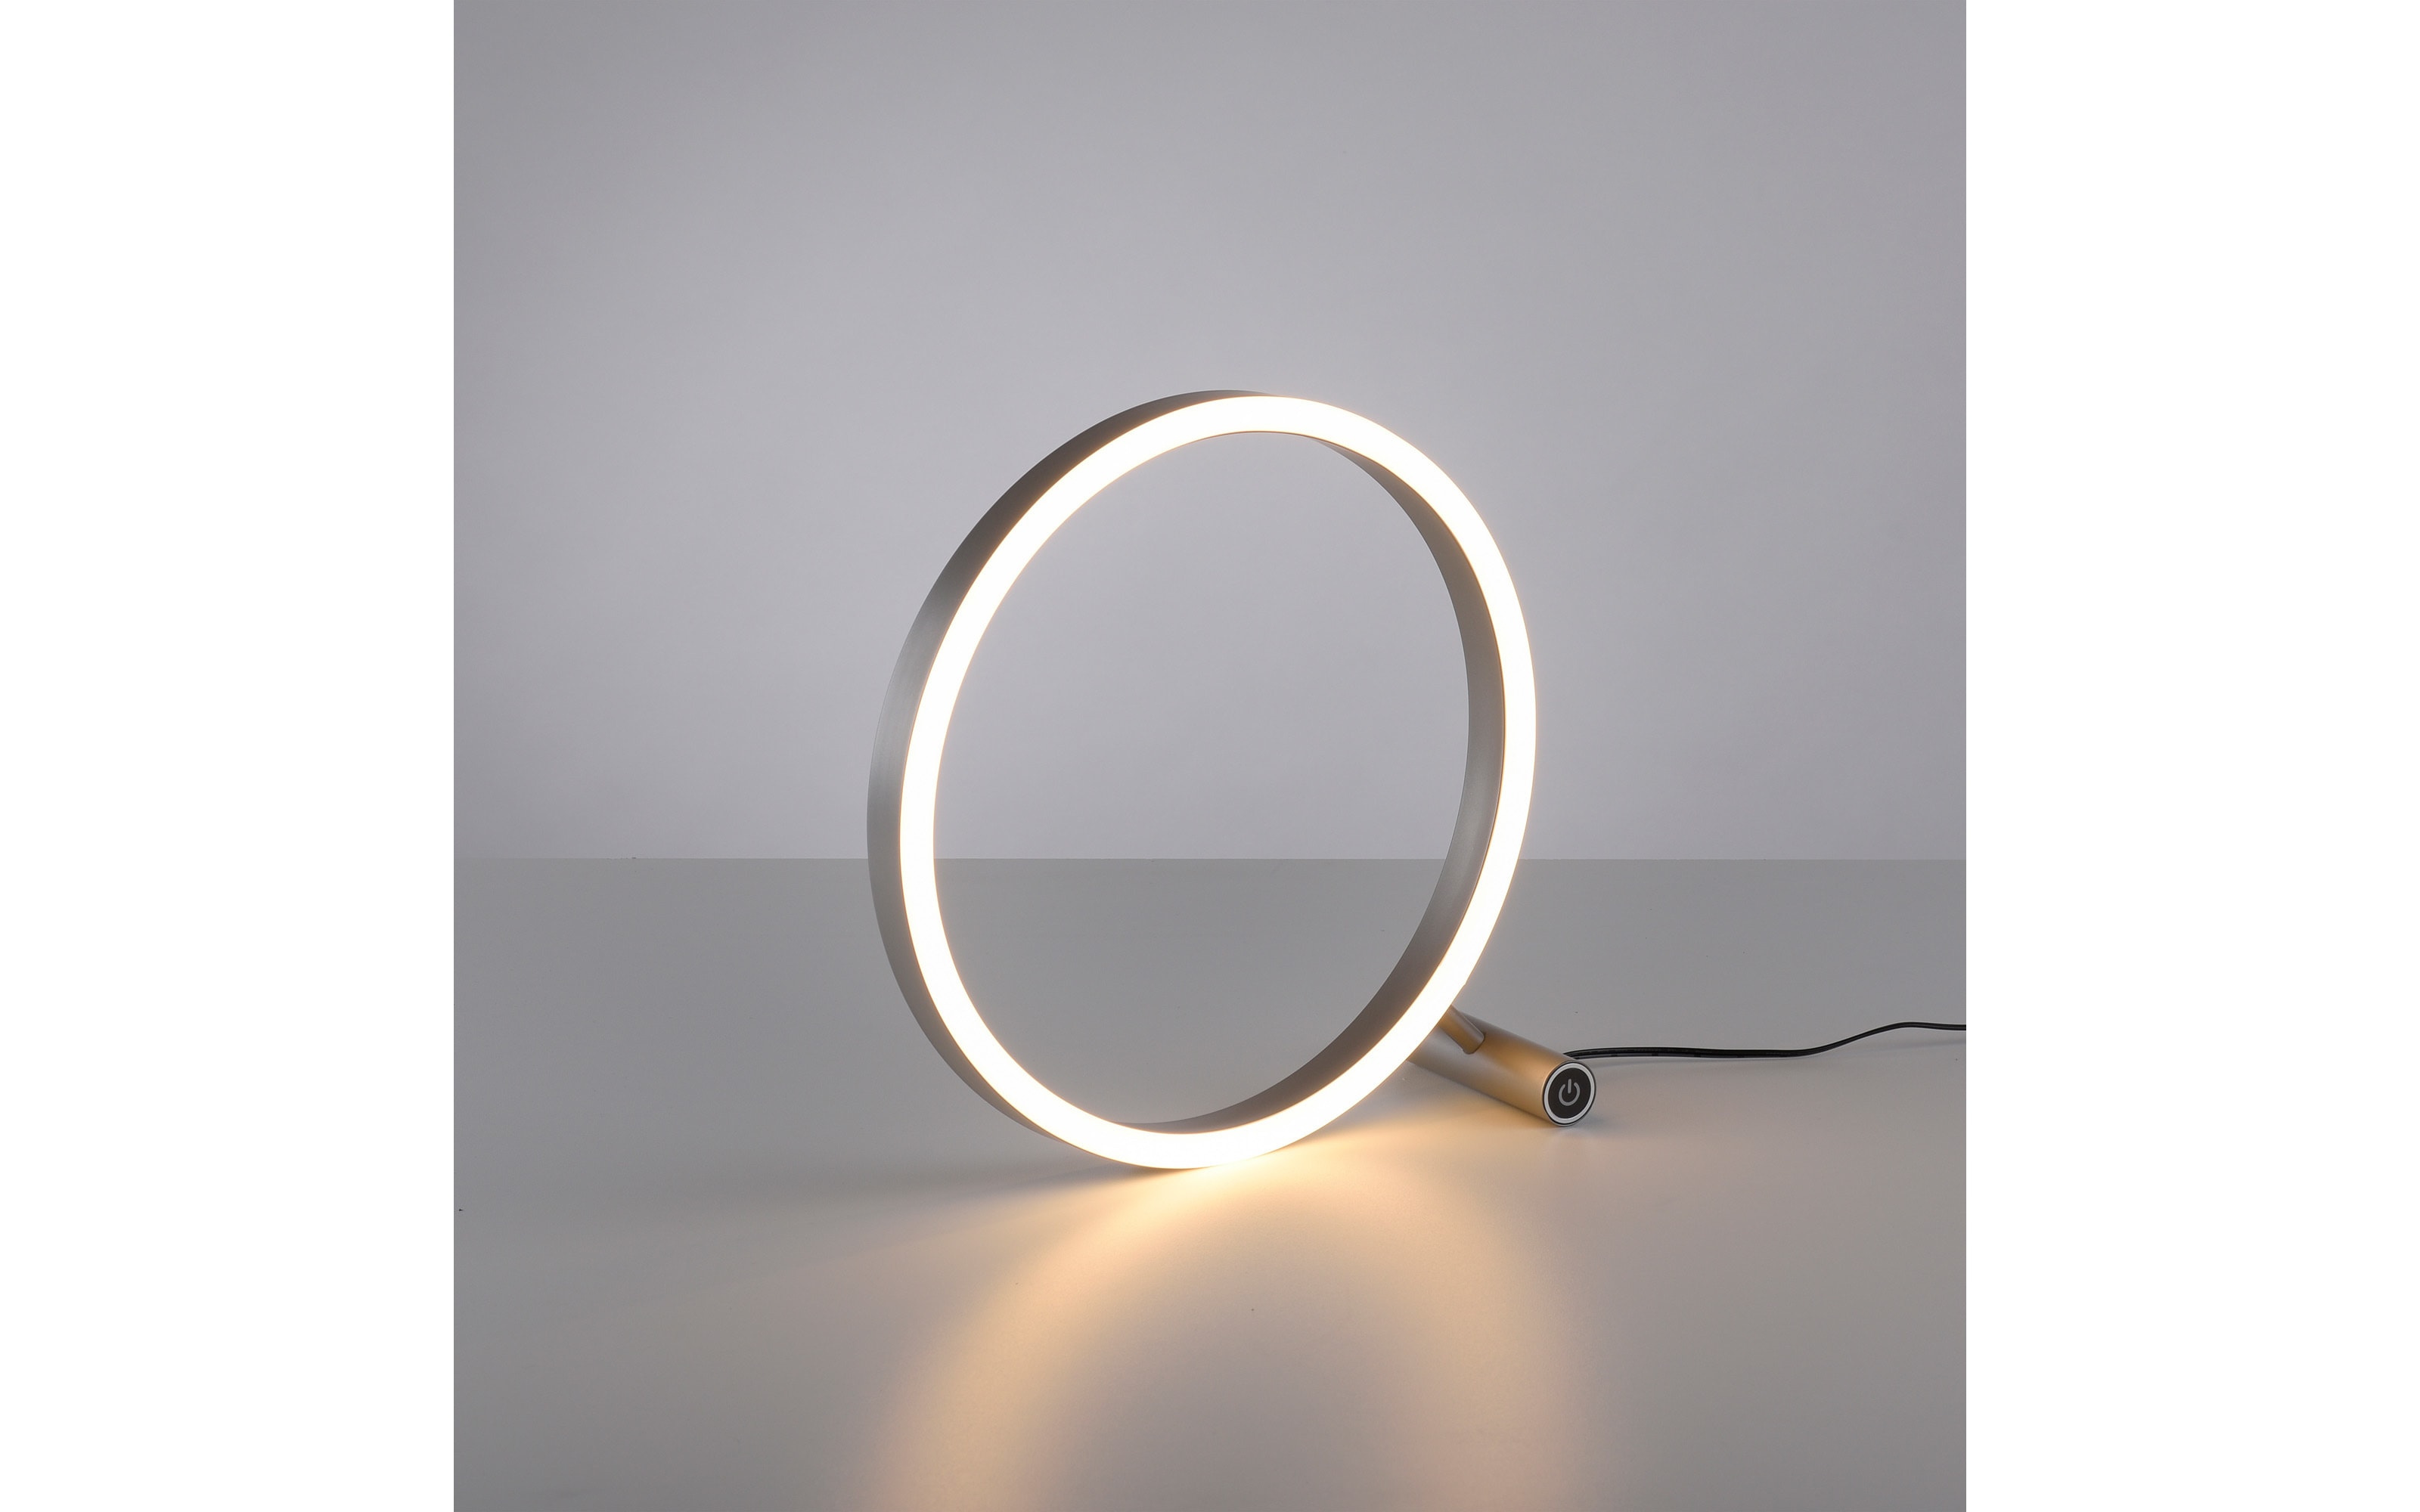 LED-Tischleuchte Ritus, aluminium, 28 cm